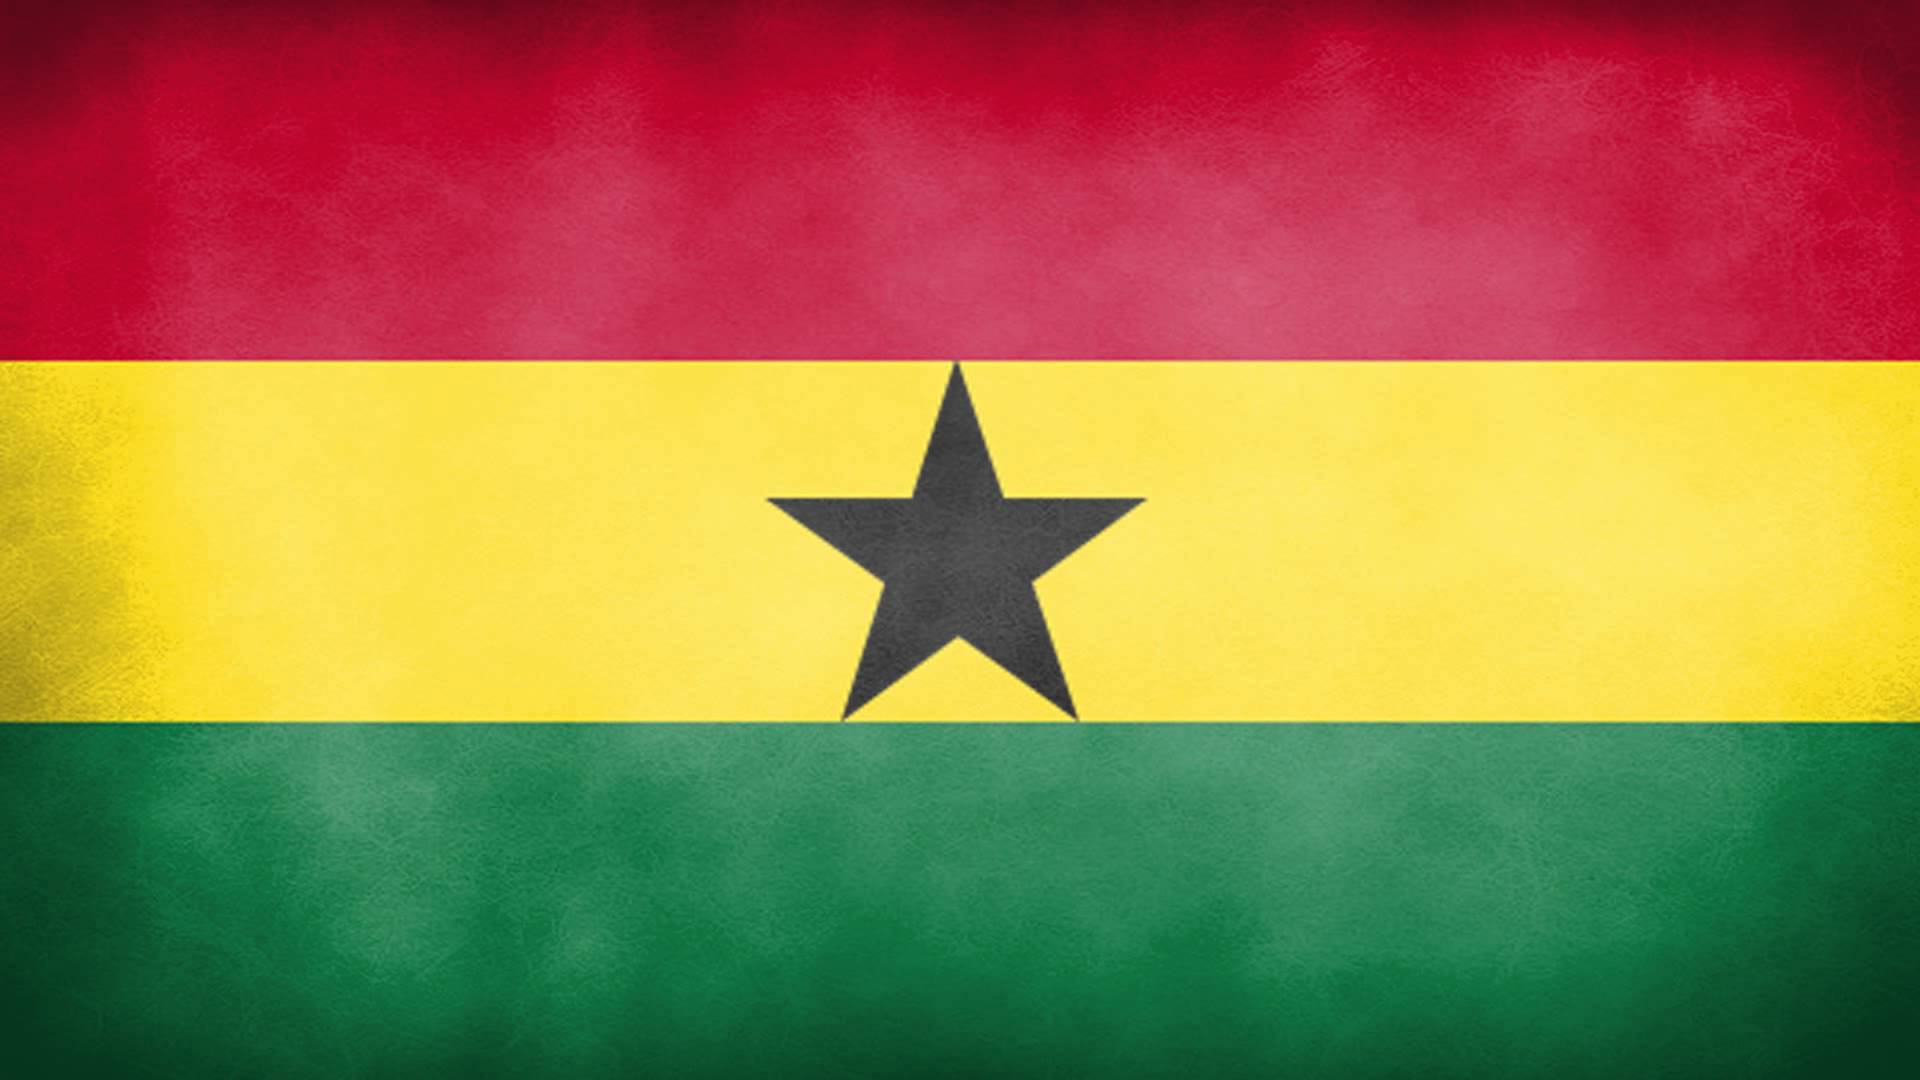 Ghana National Anthem (Instrumental) - YouTube